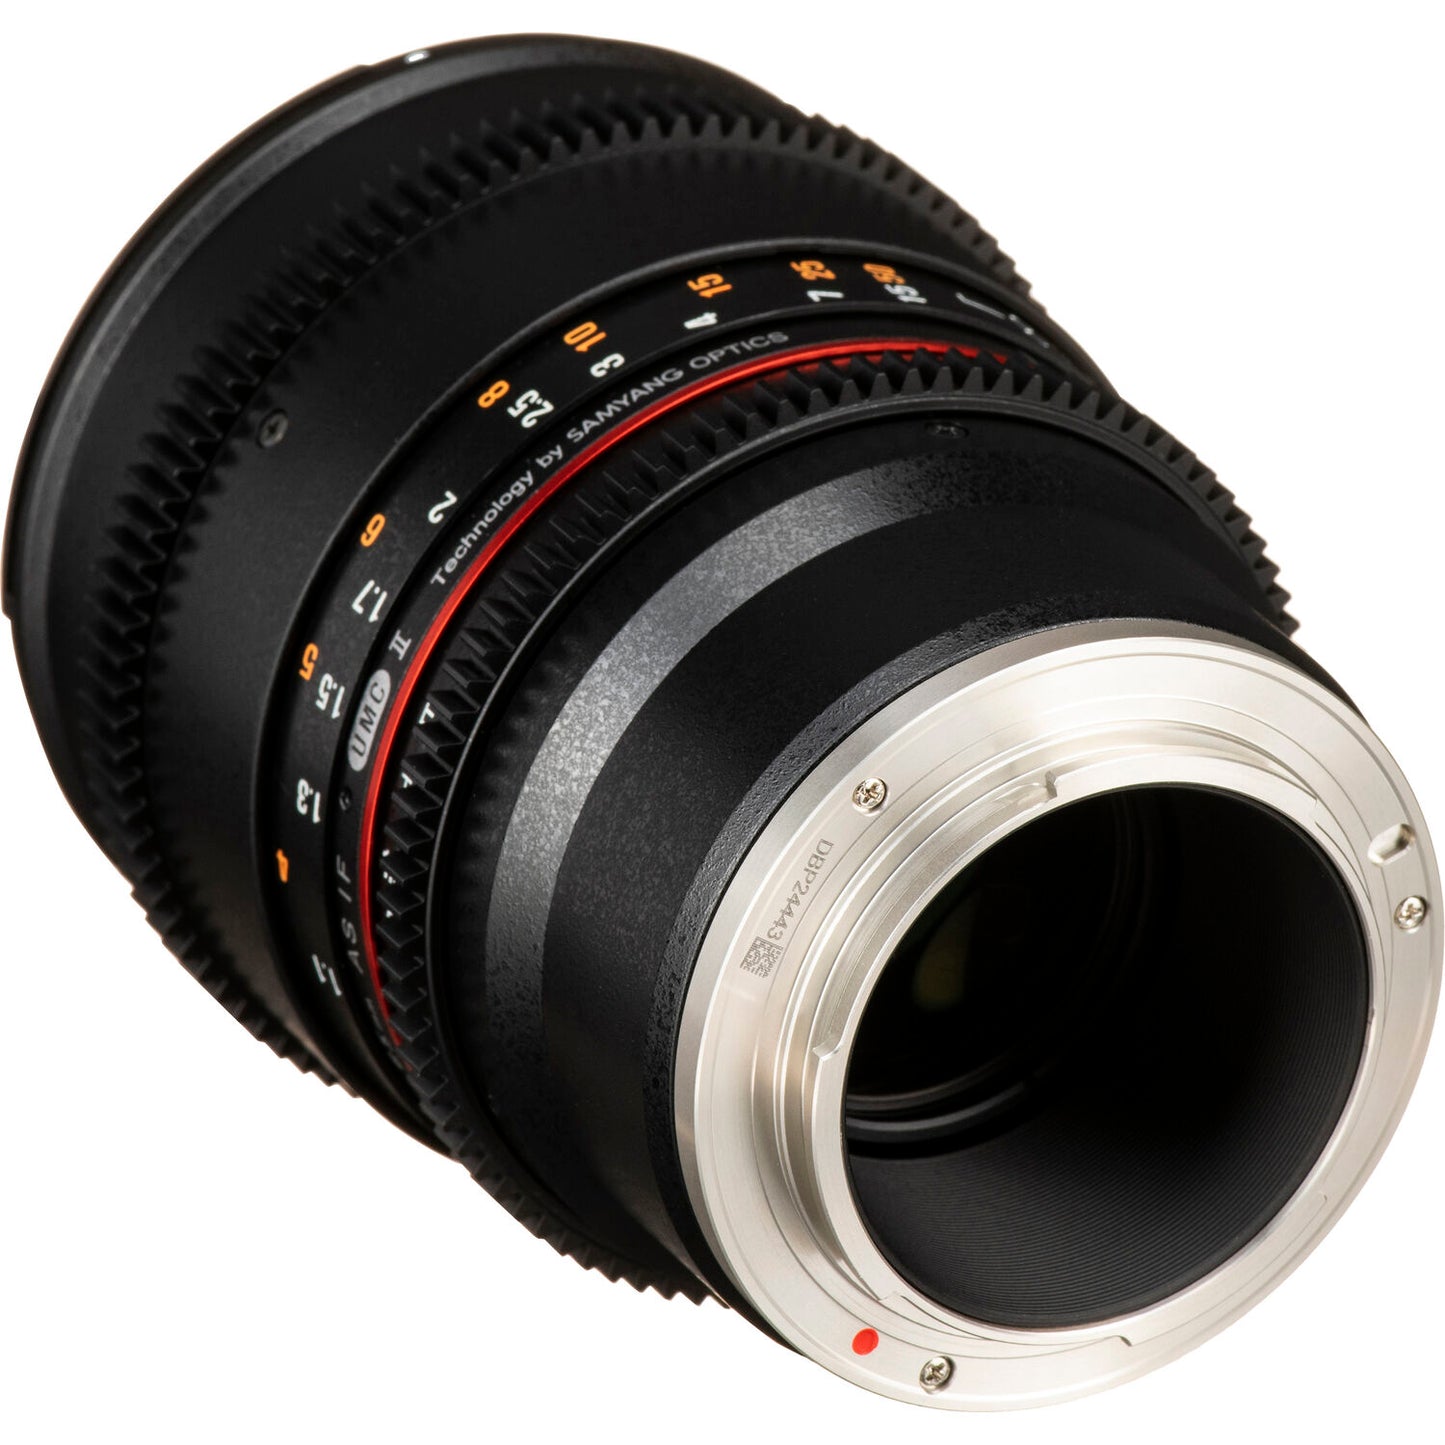 Rokinon 85mm T1.5 Cine Lens